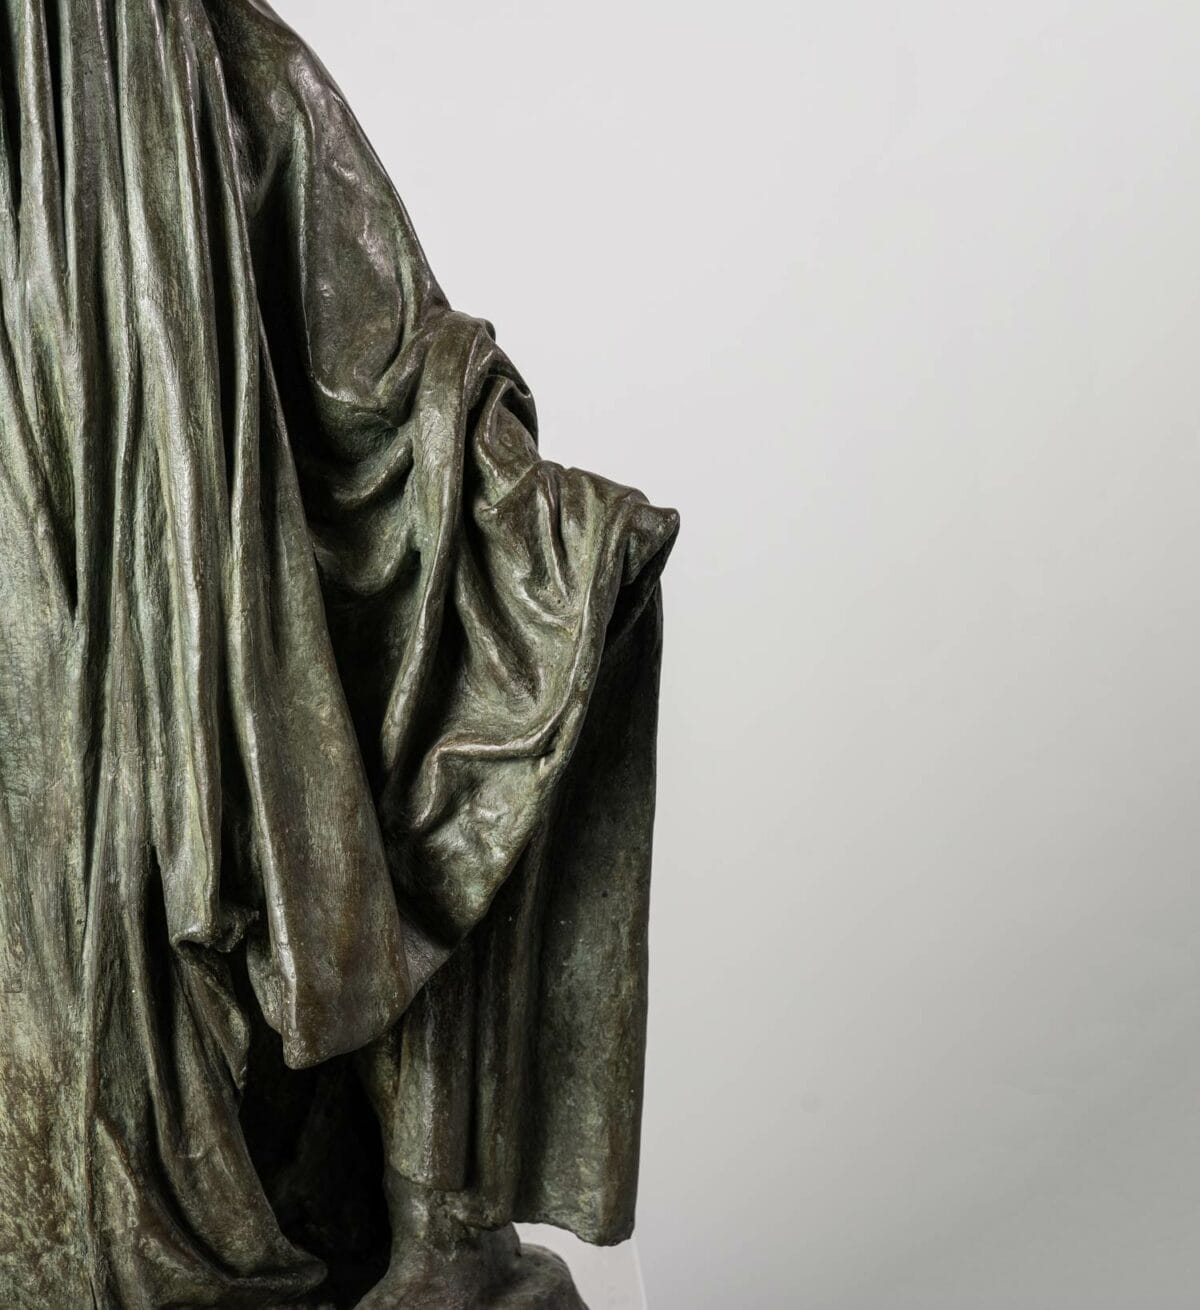 Créée par Guy Le Perse, la sculpture en bronze "Ombre voilée II" dépeint un personnage voilé les bras écartés. Elle est inspirée des hypocrites de la Divine Comédie de Dante.